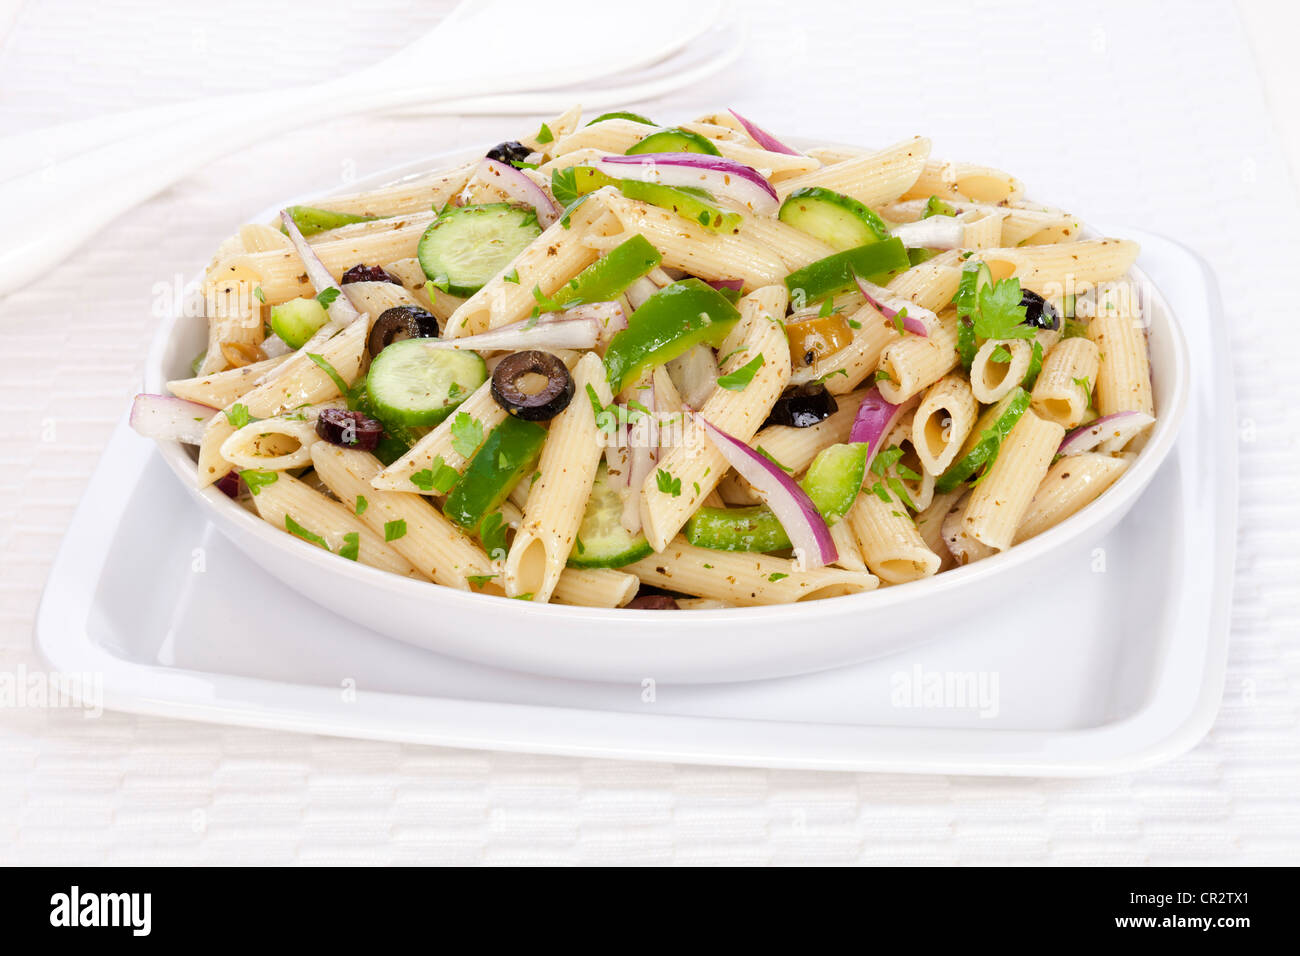 Un vegetariano insalata di pasta con un pesto di basilico medicazione, olive, cipolla rossa, il cetriolo e il peperone verde, cosparsa di prezzemolo. Foto Stock